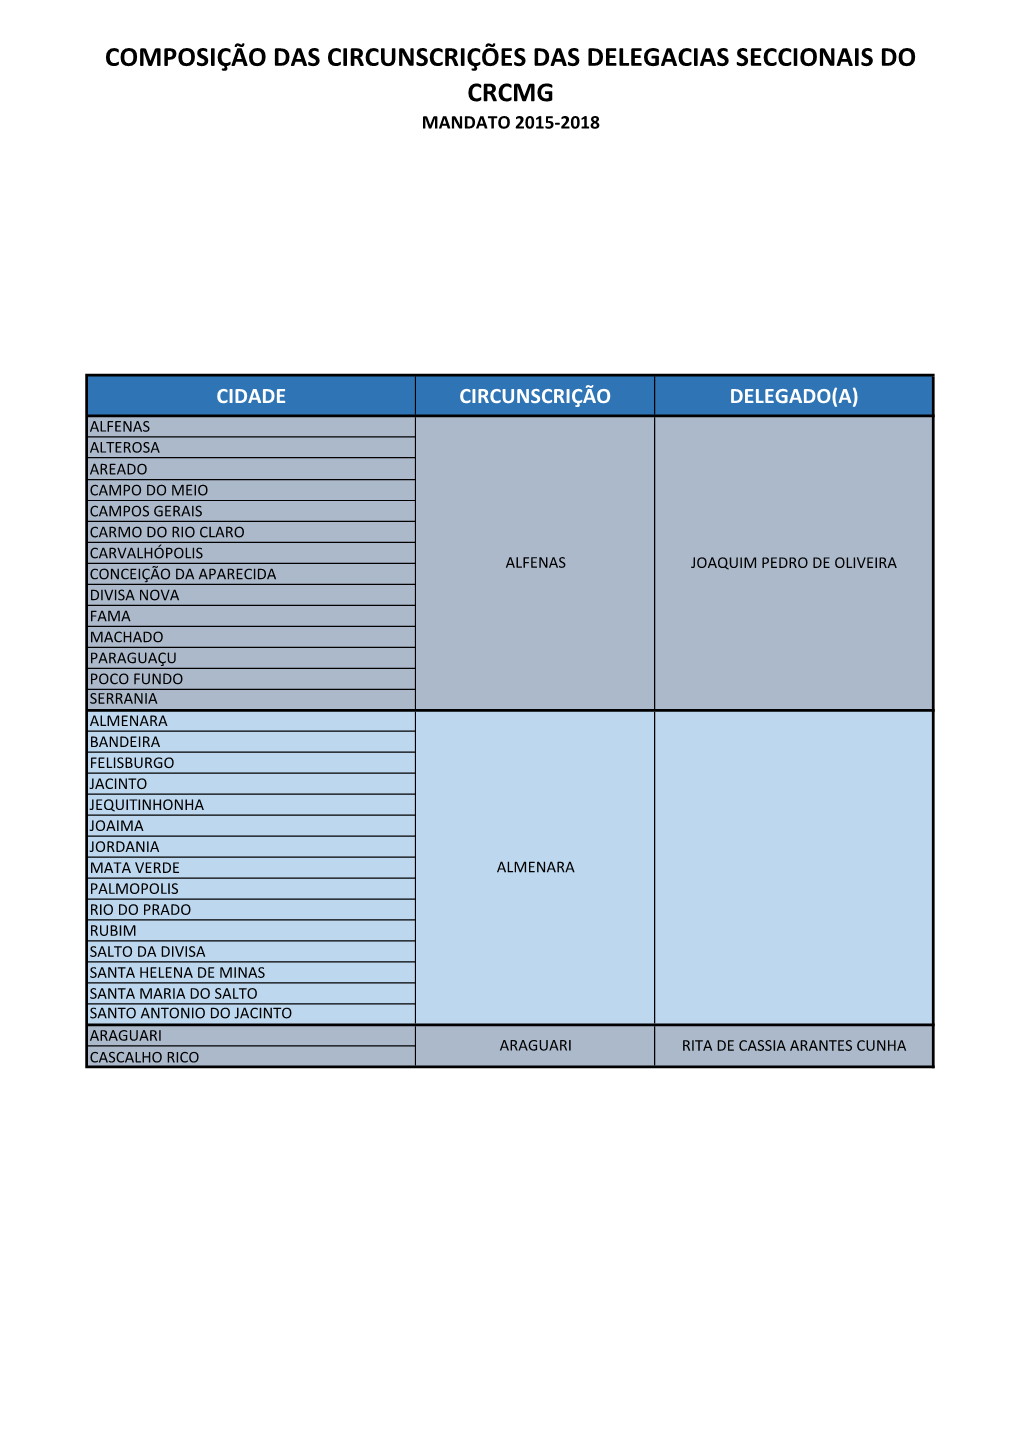 Composição Das Circunscrições Das Delegacias Seccionais Do Crcmg Mandato 2015-2018